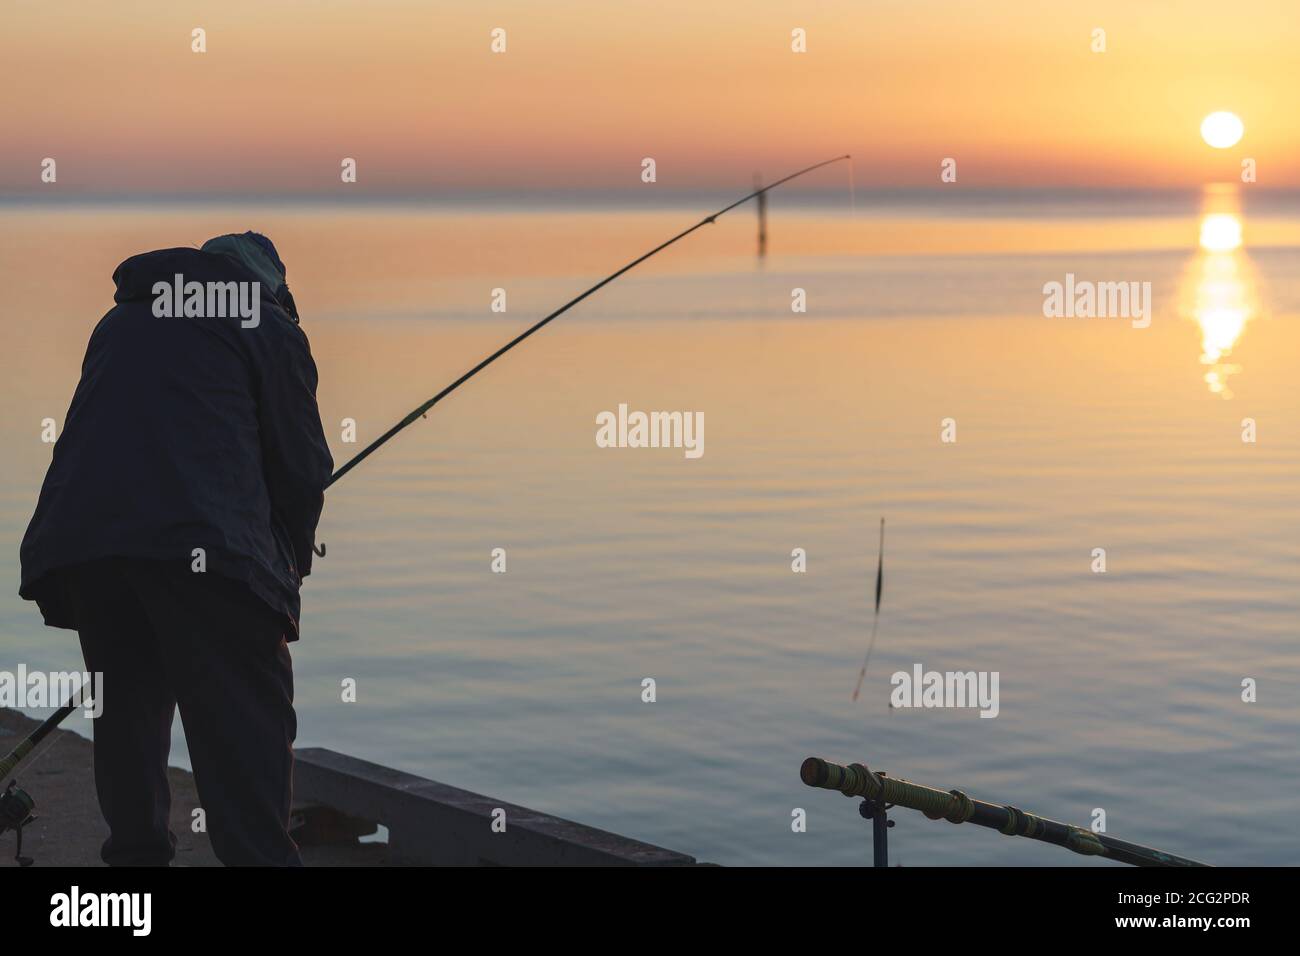 Silhouette eines erwachsenen Mannes, der am Pier Geelong angeln soll Beruhigendes Meer mit Sonnenaufgang während der goldenen Stunde Stockfoto